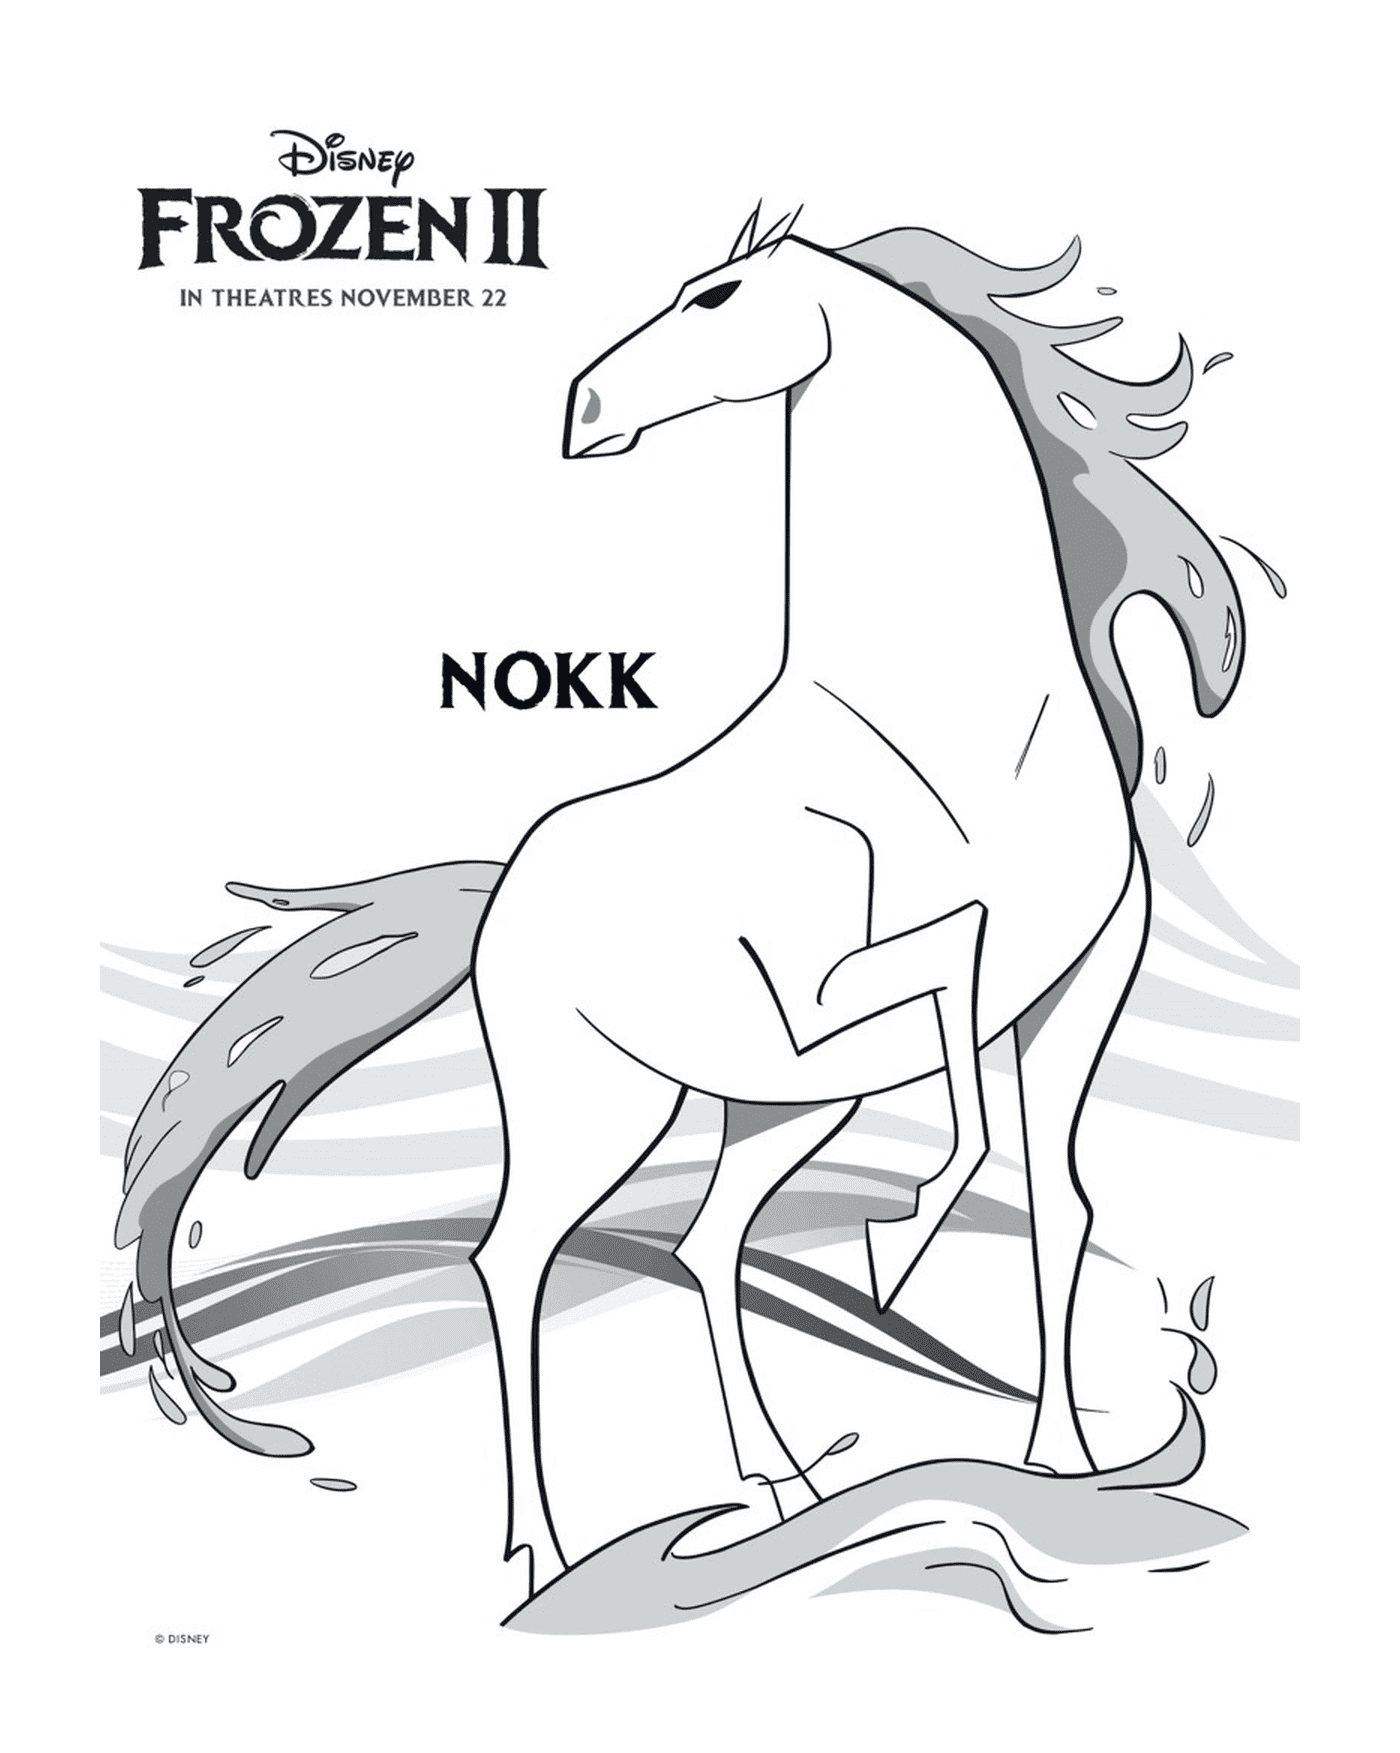  The Nokk Horse in Disney's Snow Queen 2 